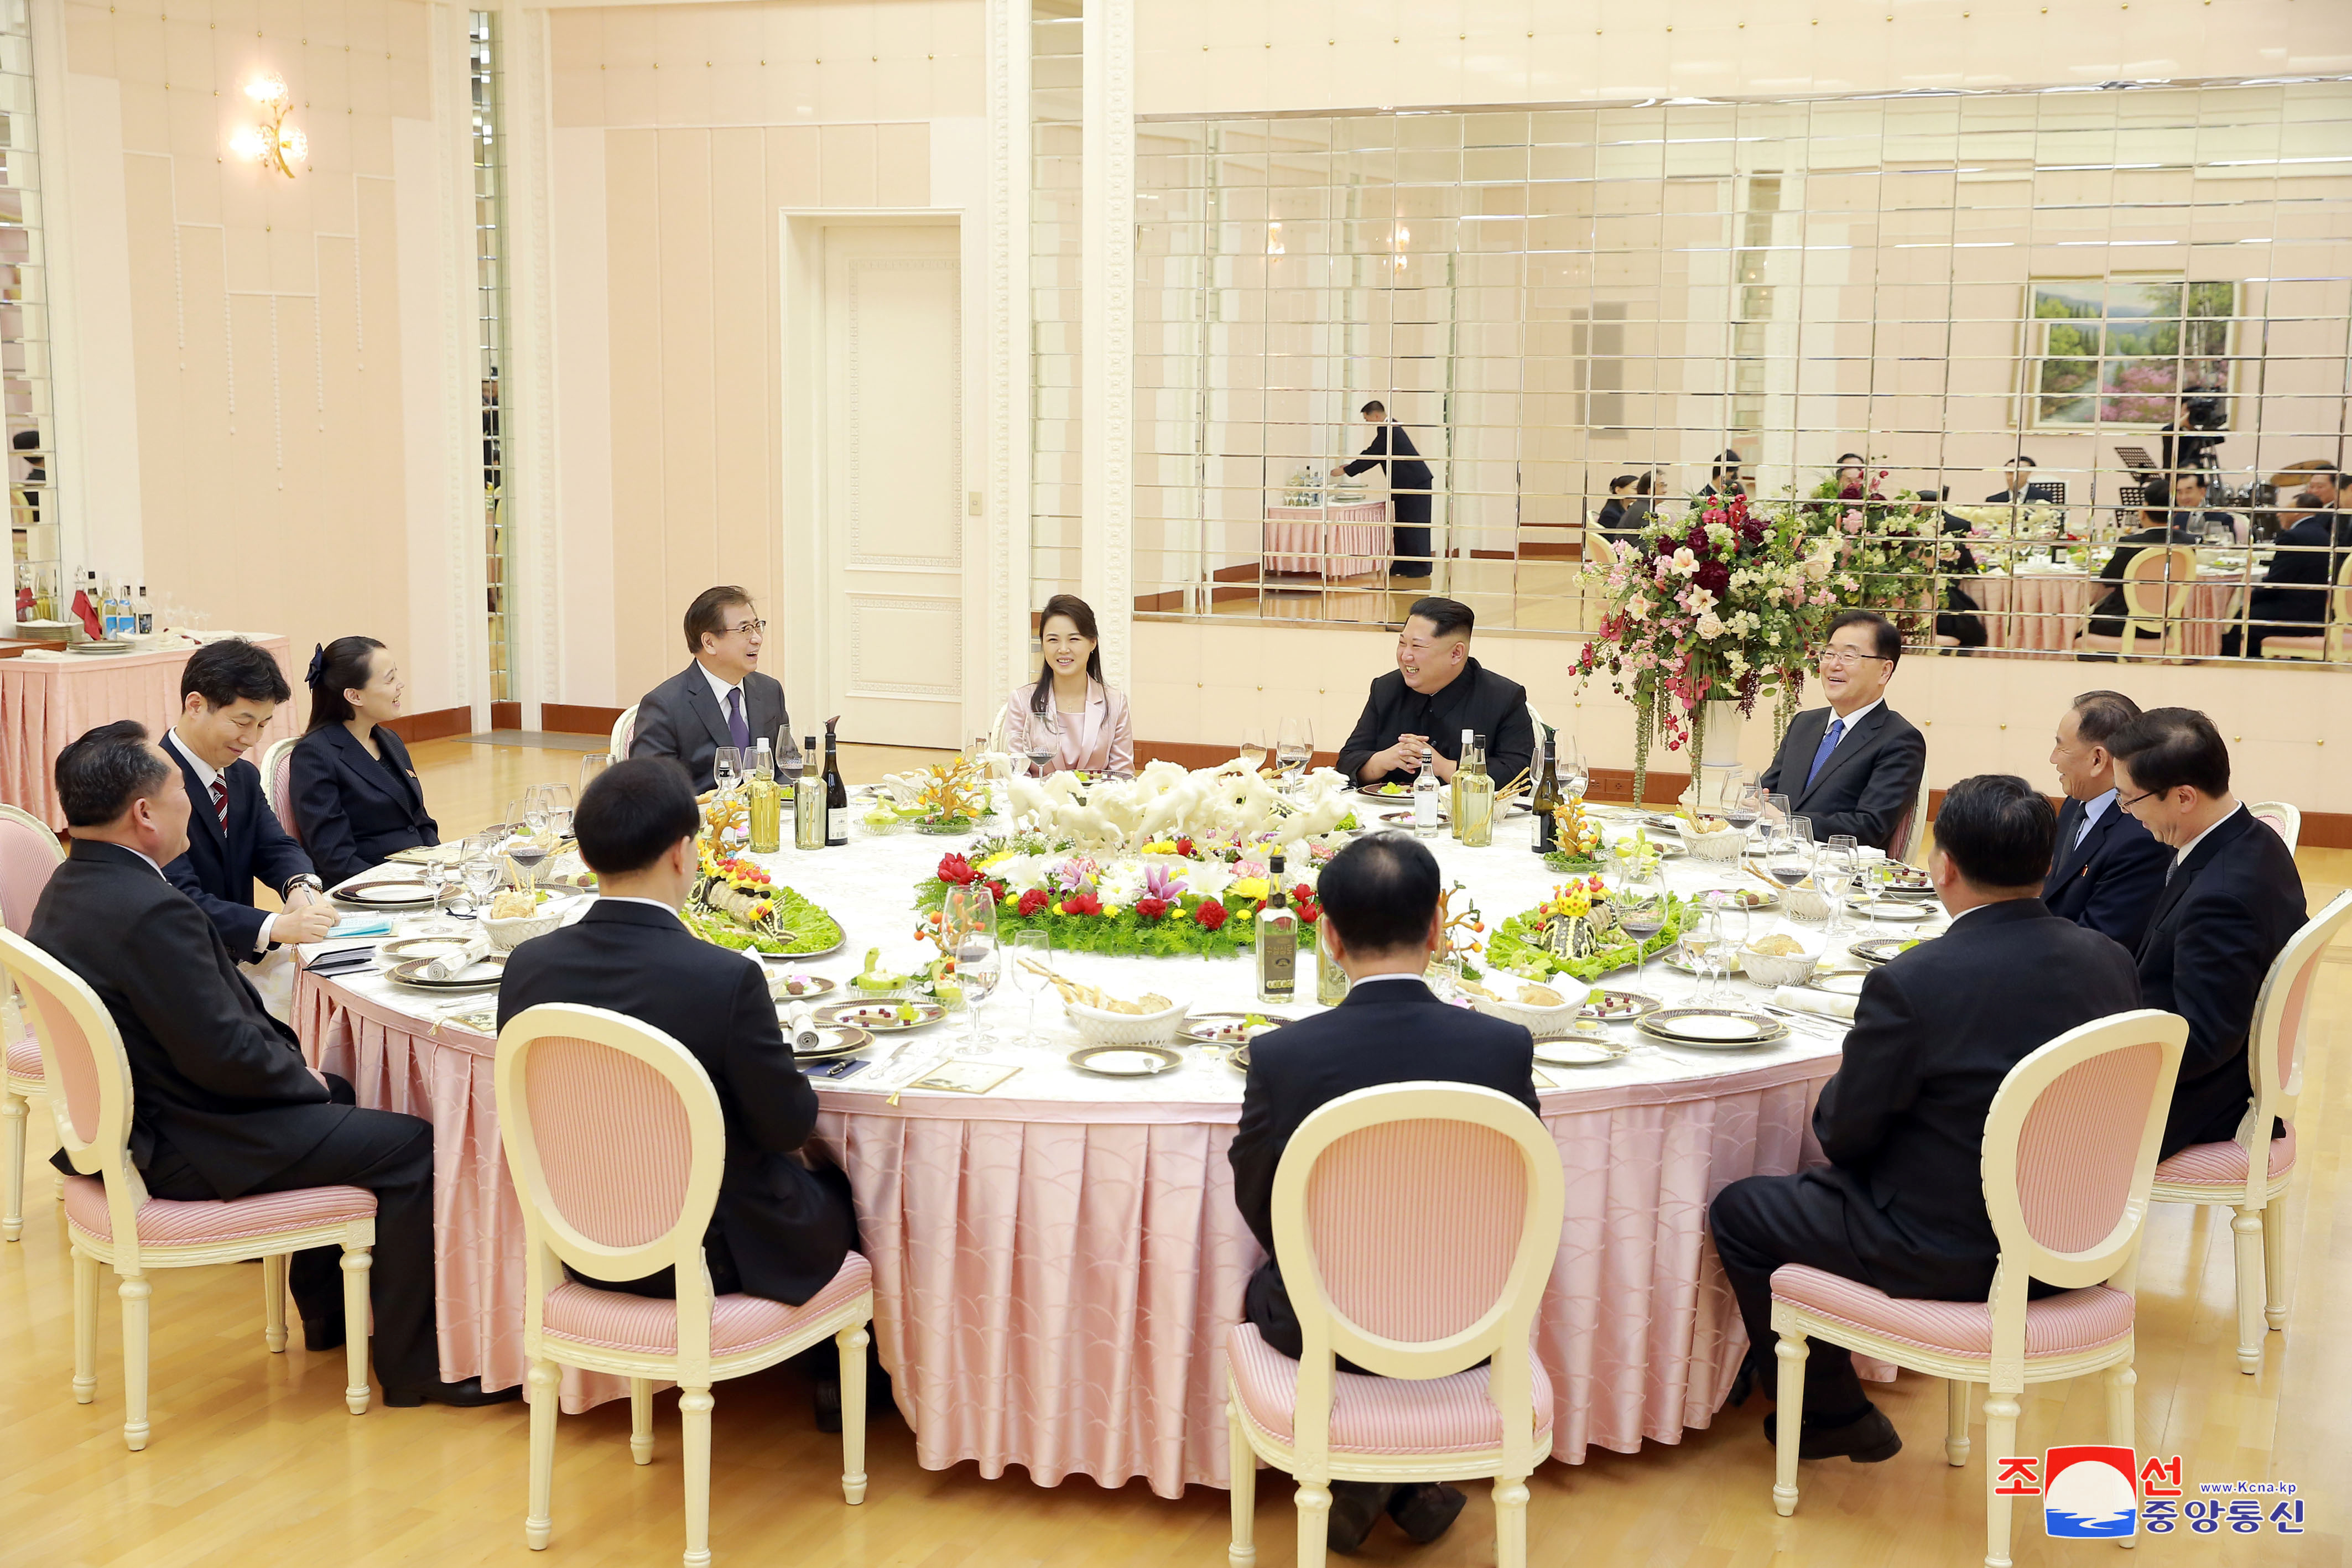 لقاء زعيم كوريا الشمالية مع وفد كوريا الجنوبية (2)